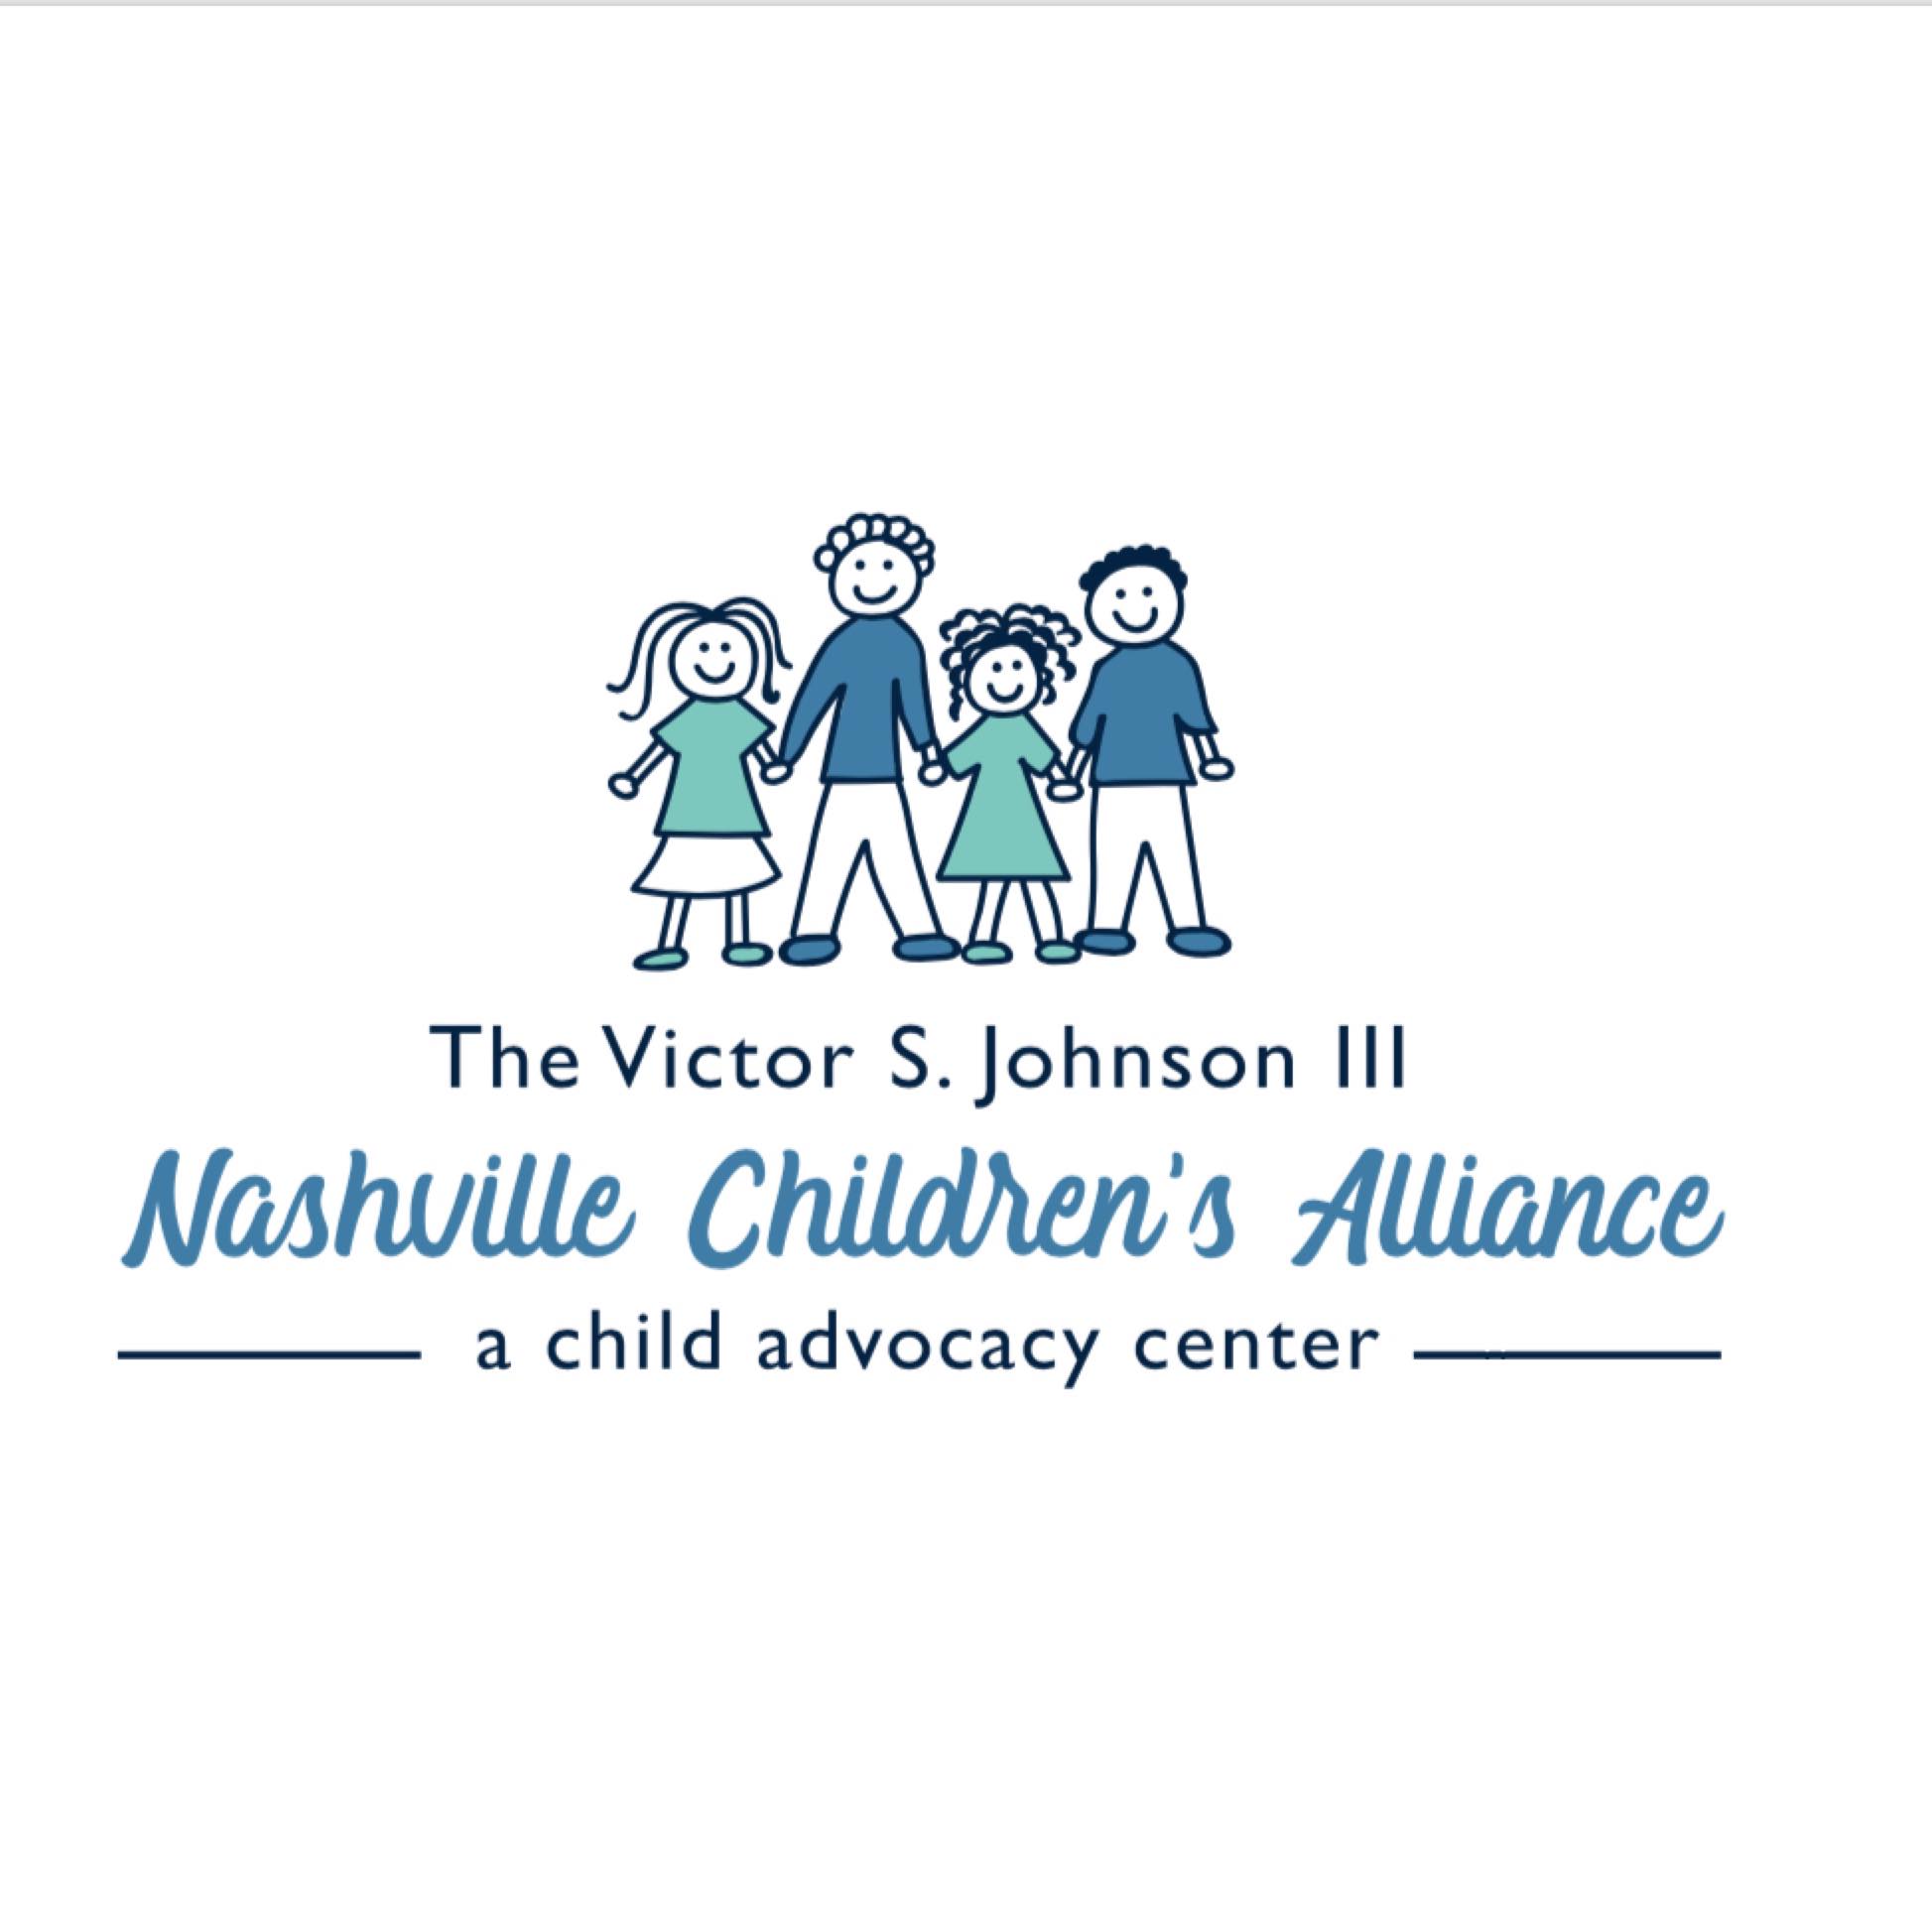 Nashville Children's Alliance